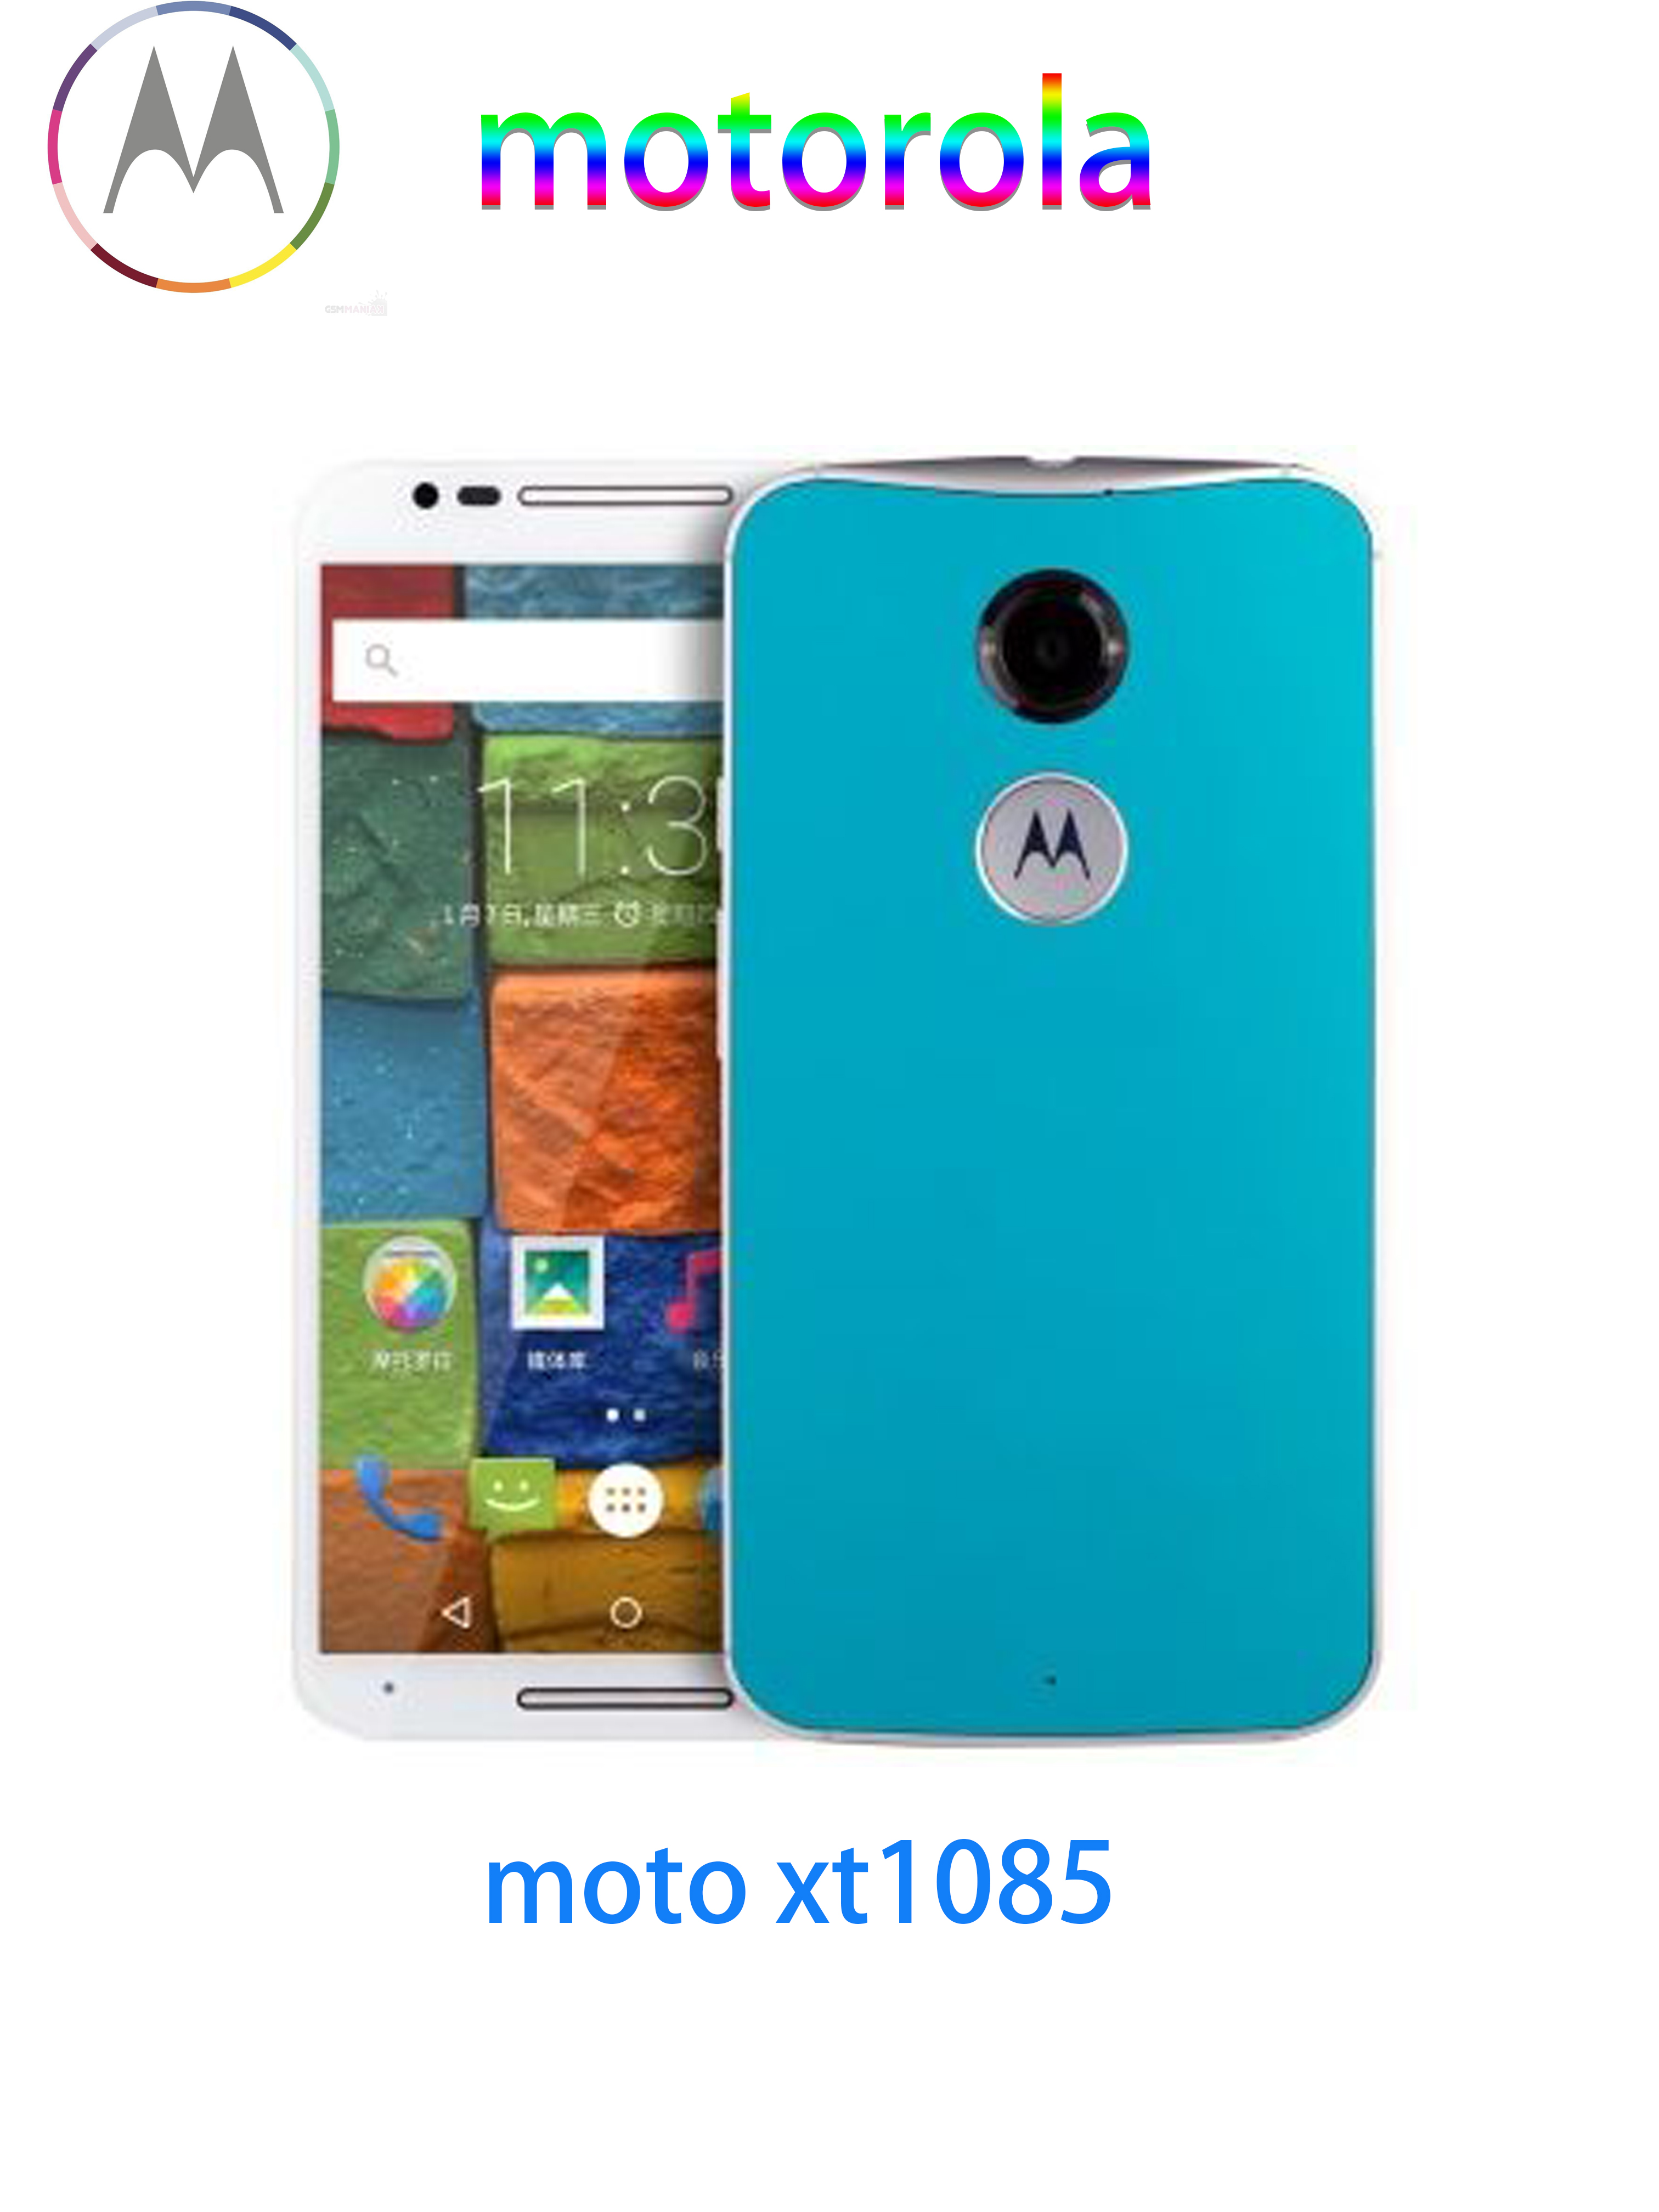 【經典篇】-MOTO Xt1085，颜值爆表订制化手机上的顶峰之作